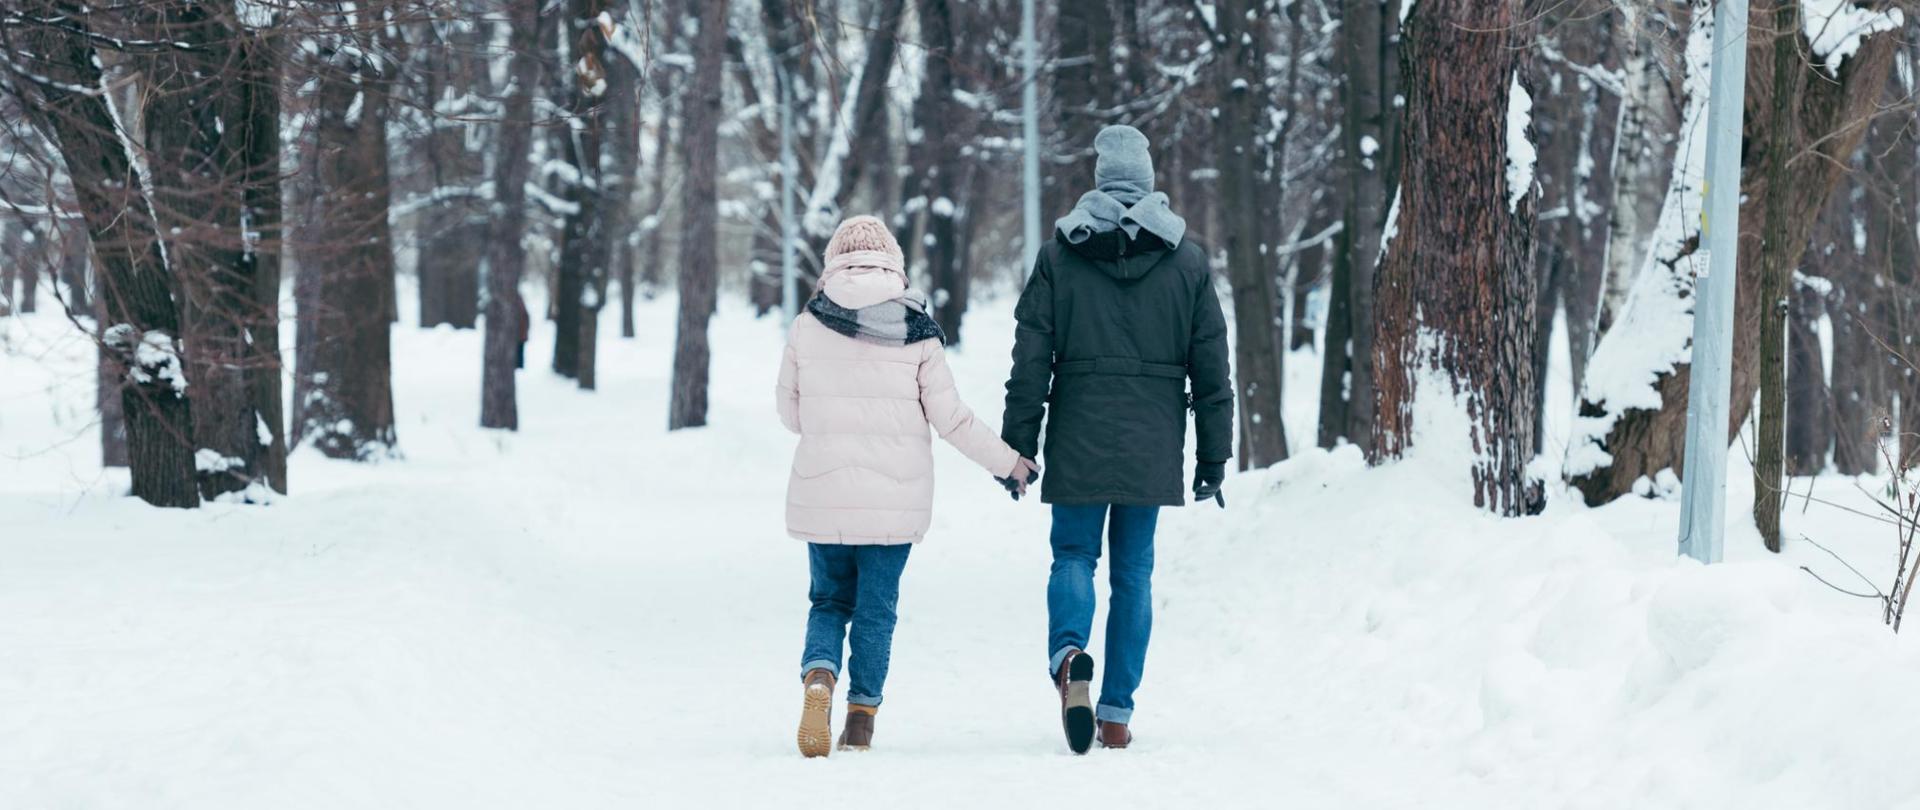 Na zdjęciu są dwie osoby - kobieta i mężczyzna trzymający się za ręce. Znajdują się w zaśnieżonym lesie.